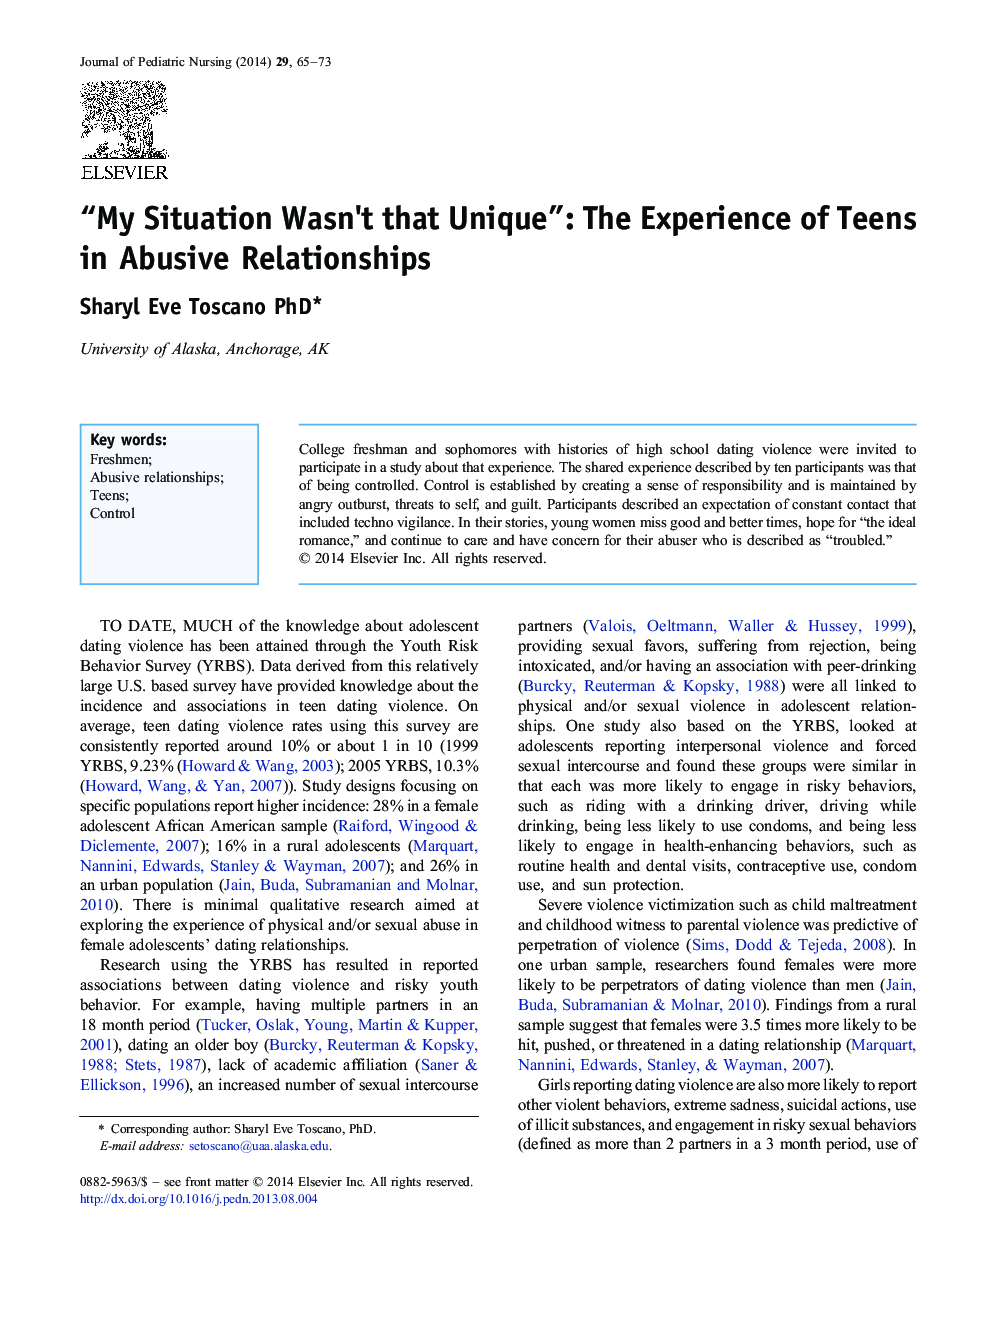 وضعیت من این قدر منحصر به فرد نبود": تجربه نوجوانان در روابط خشونت آمیز